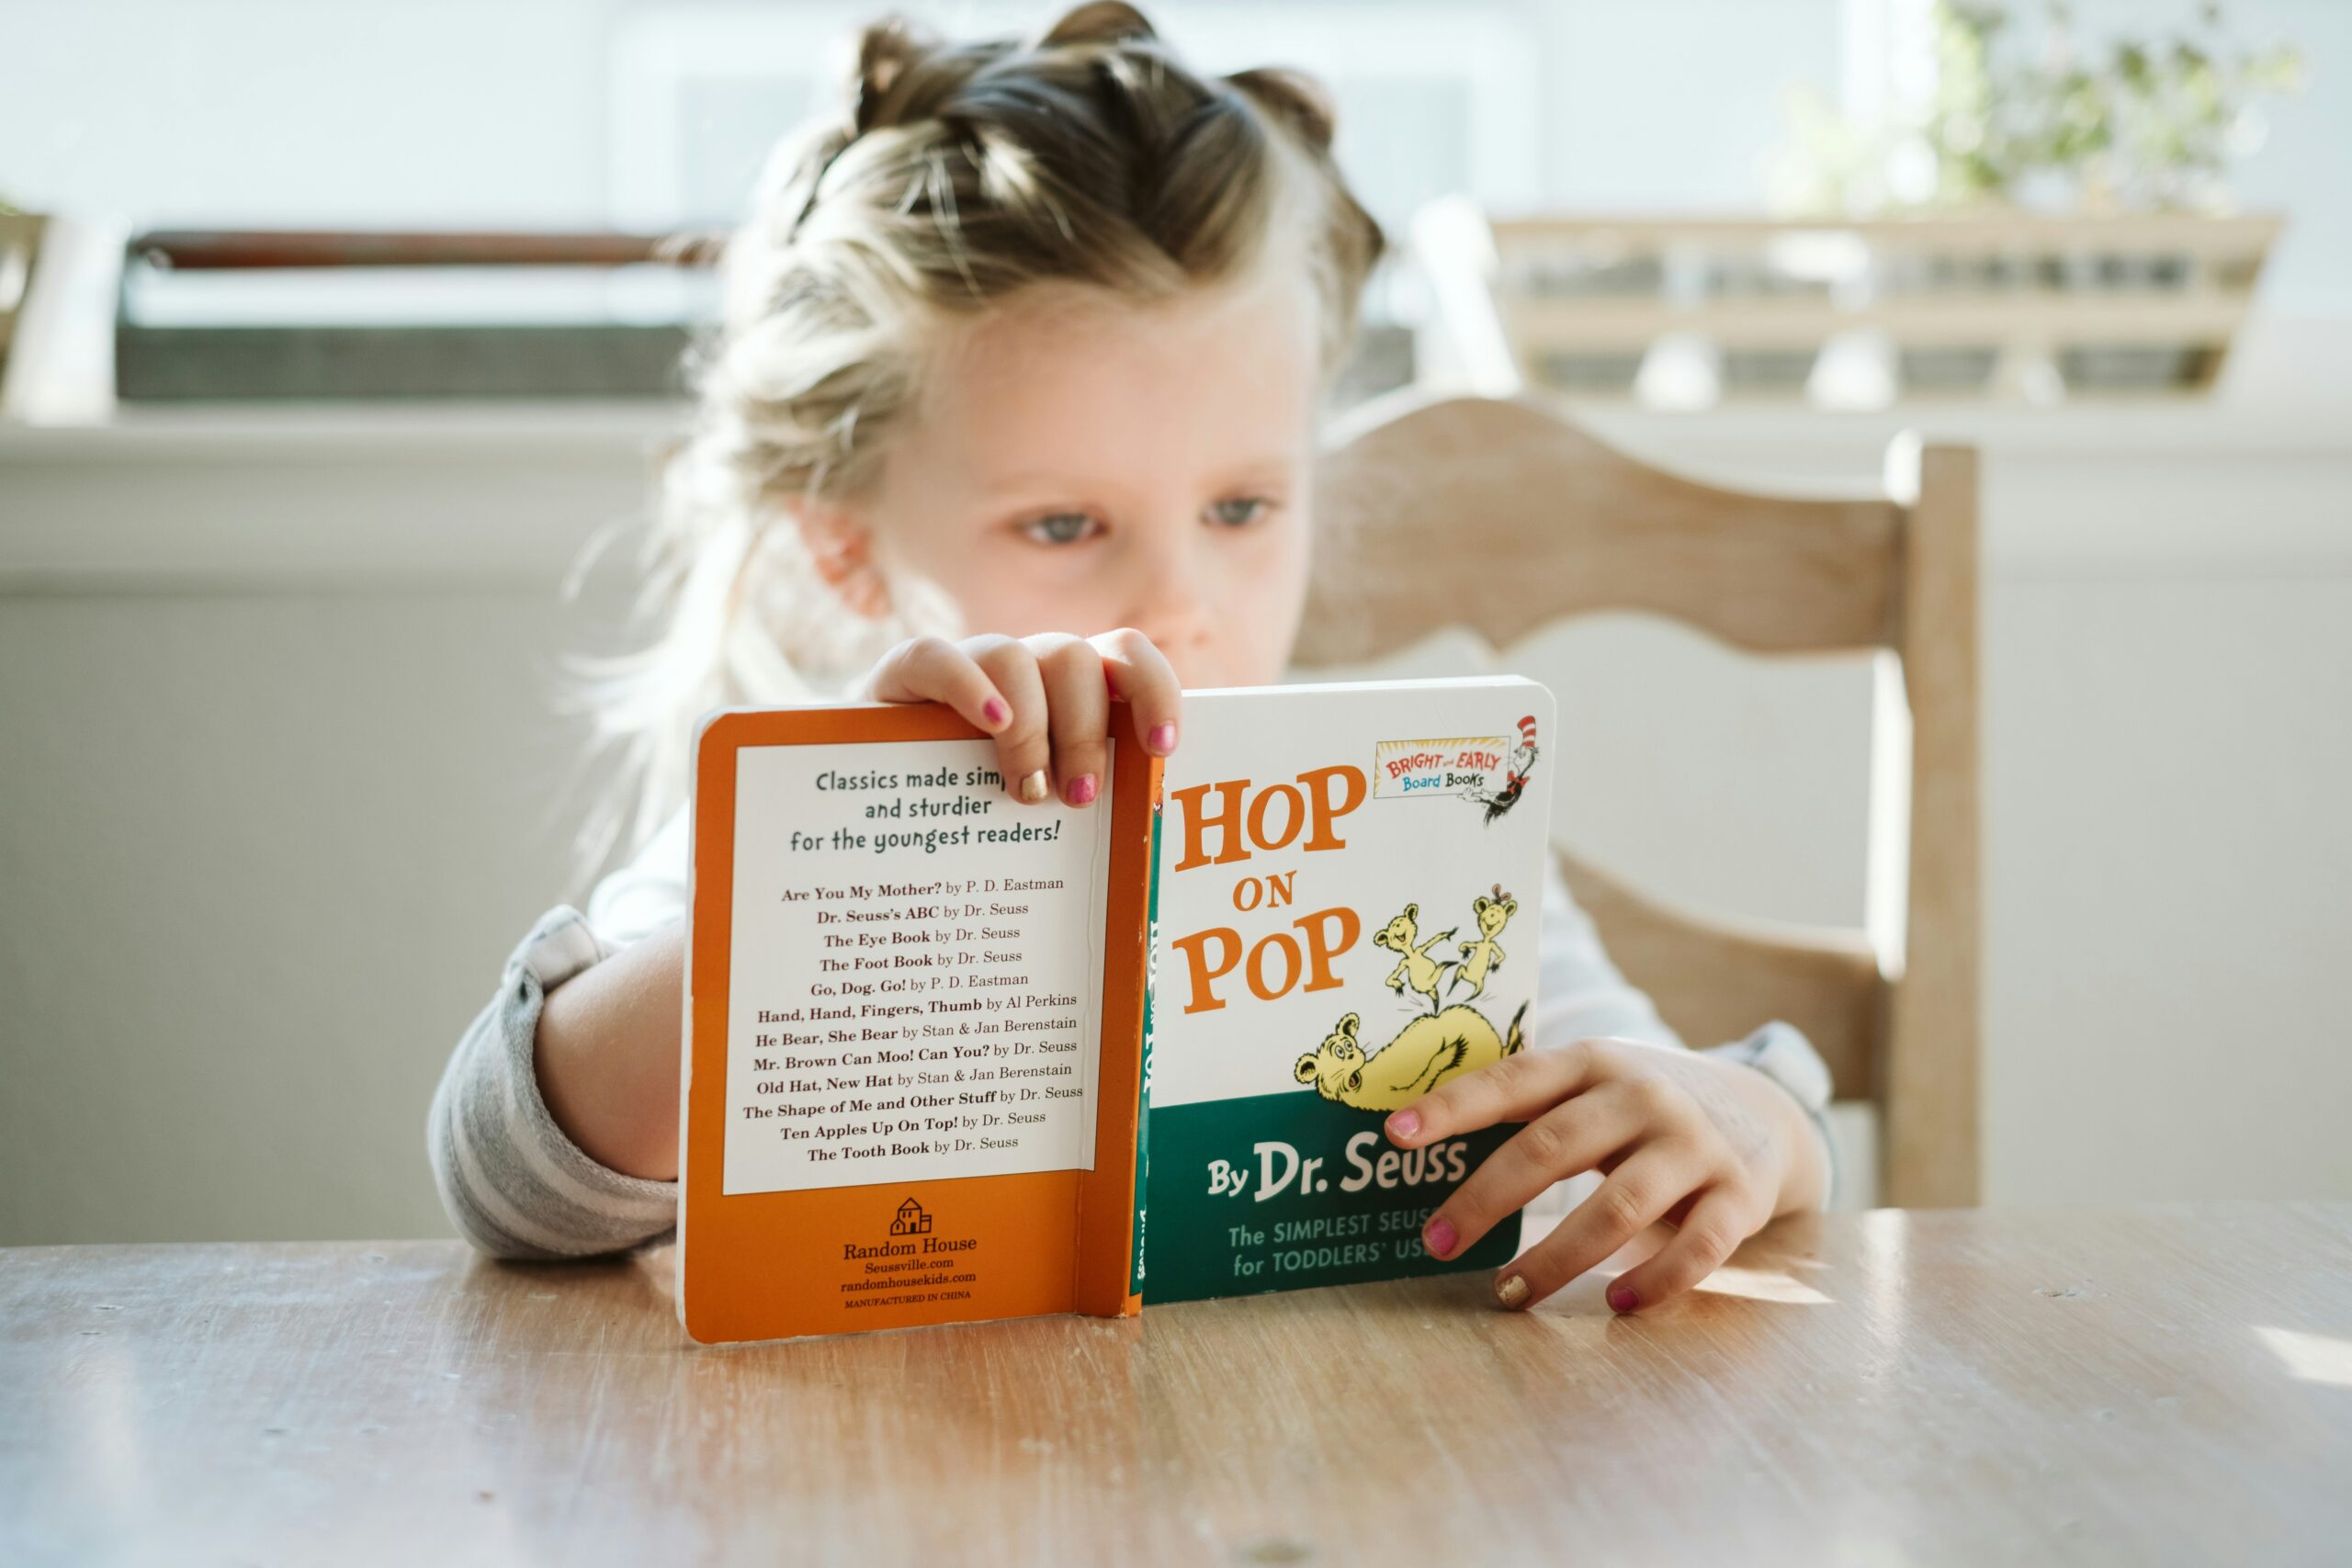 Przy drewnianym stole mała dziewczynka czyta książkę. Opiera ją pionowo o blat. Książka ma zielono-pomarańczową okładkę.